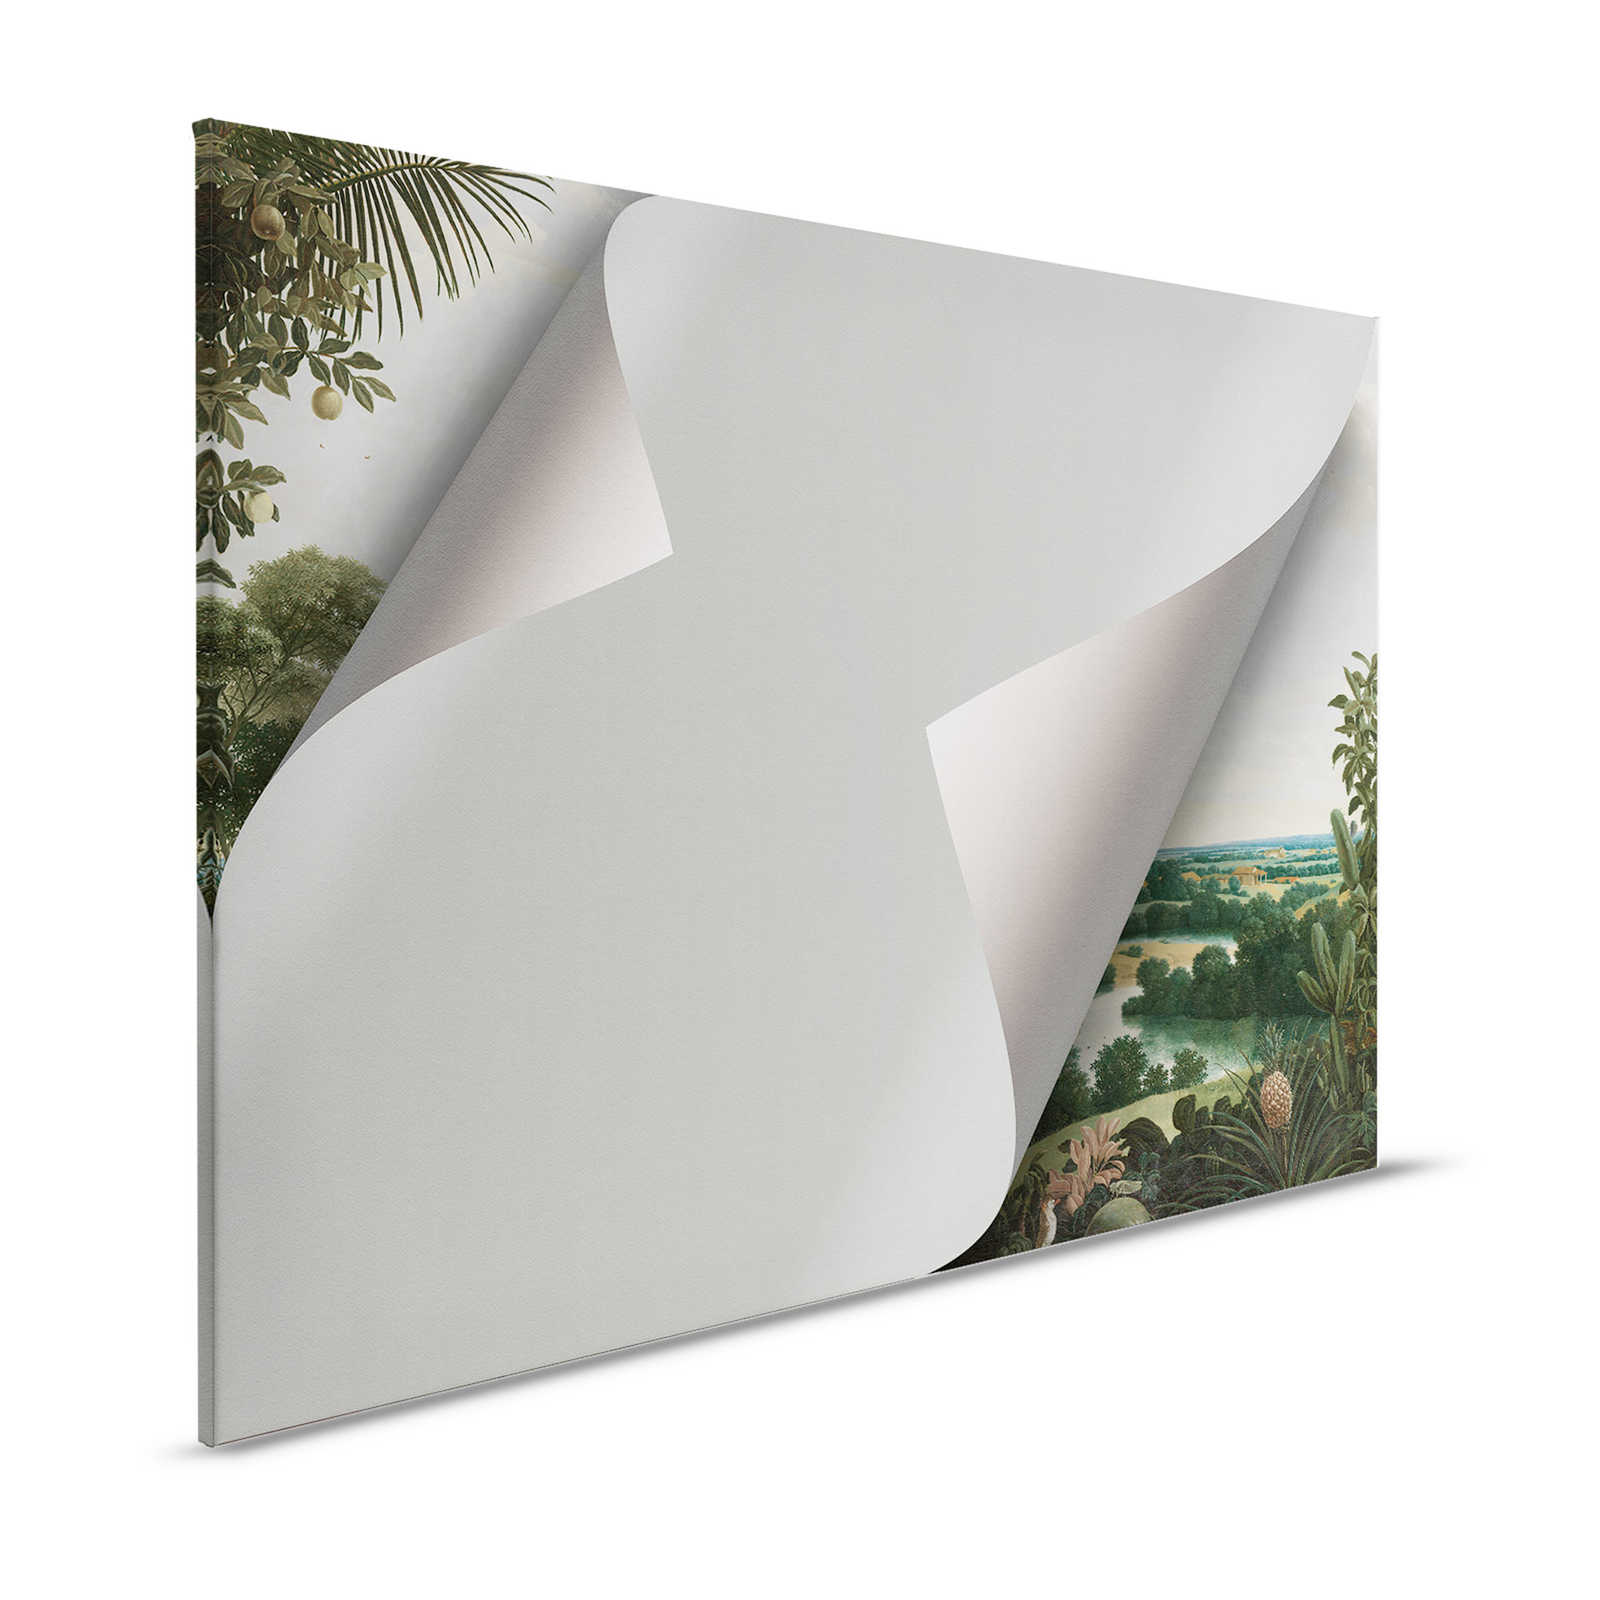 Lugares ocultos 1 - Pintura sobre lienzo efecto 3D con motivo oculto - 1,20 m x 0,80 m
